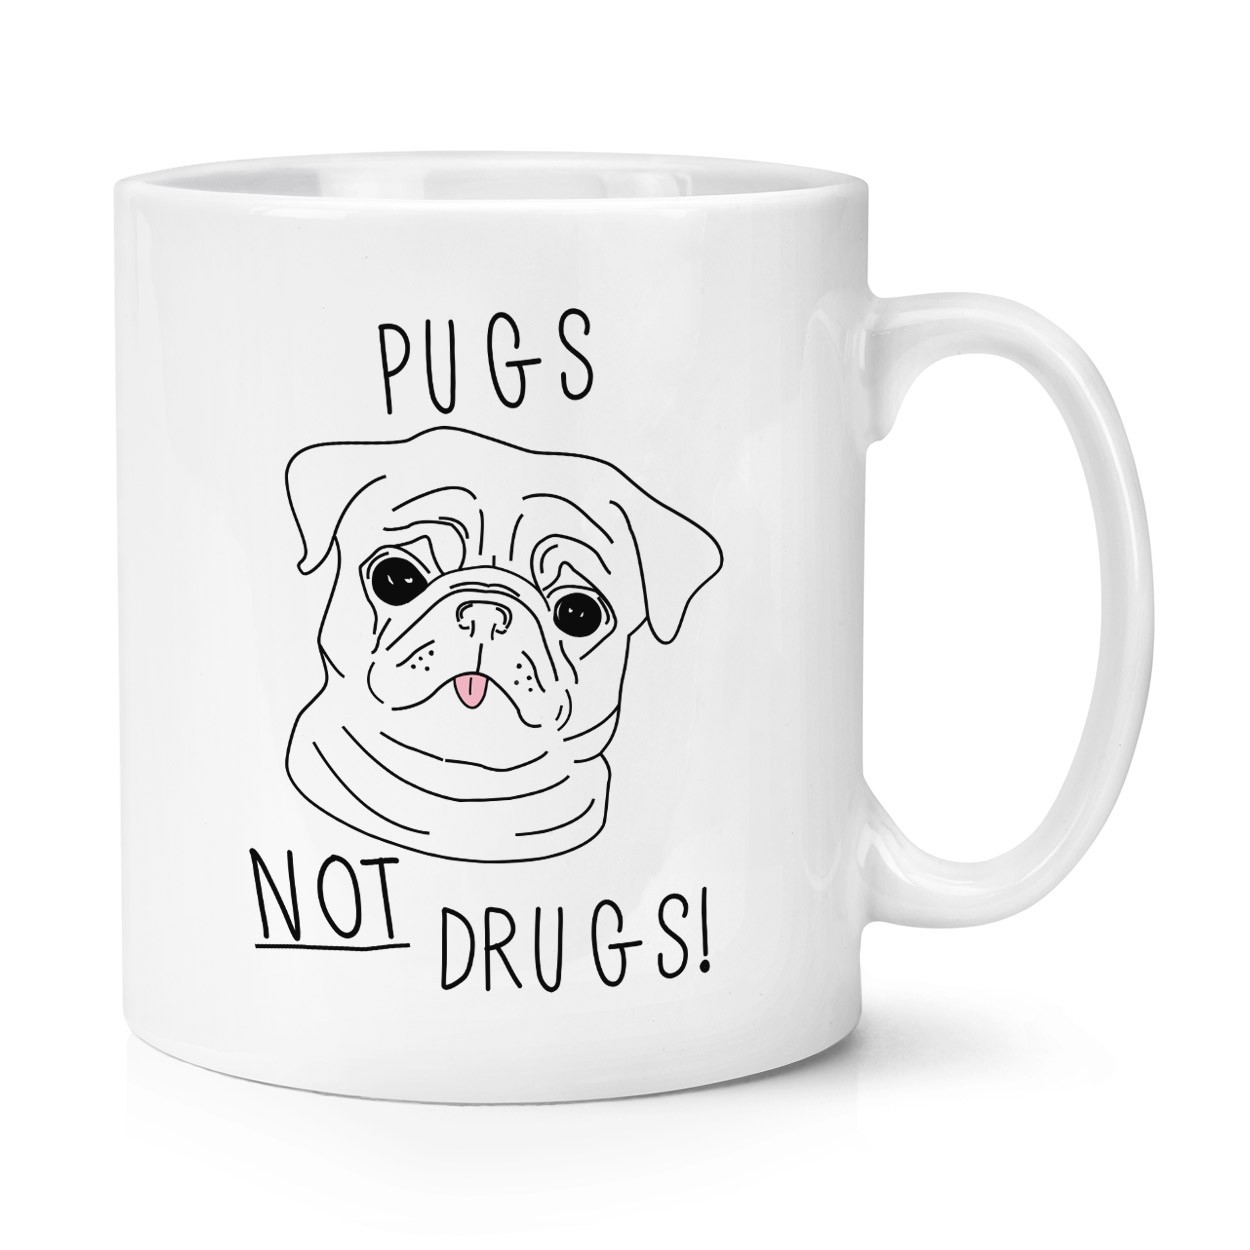 Pugs Not Drugs 10oz Mug Cup